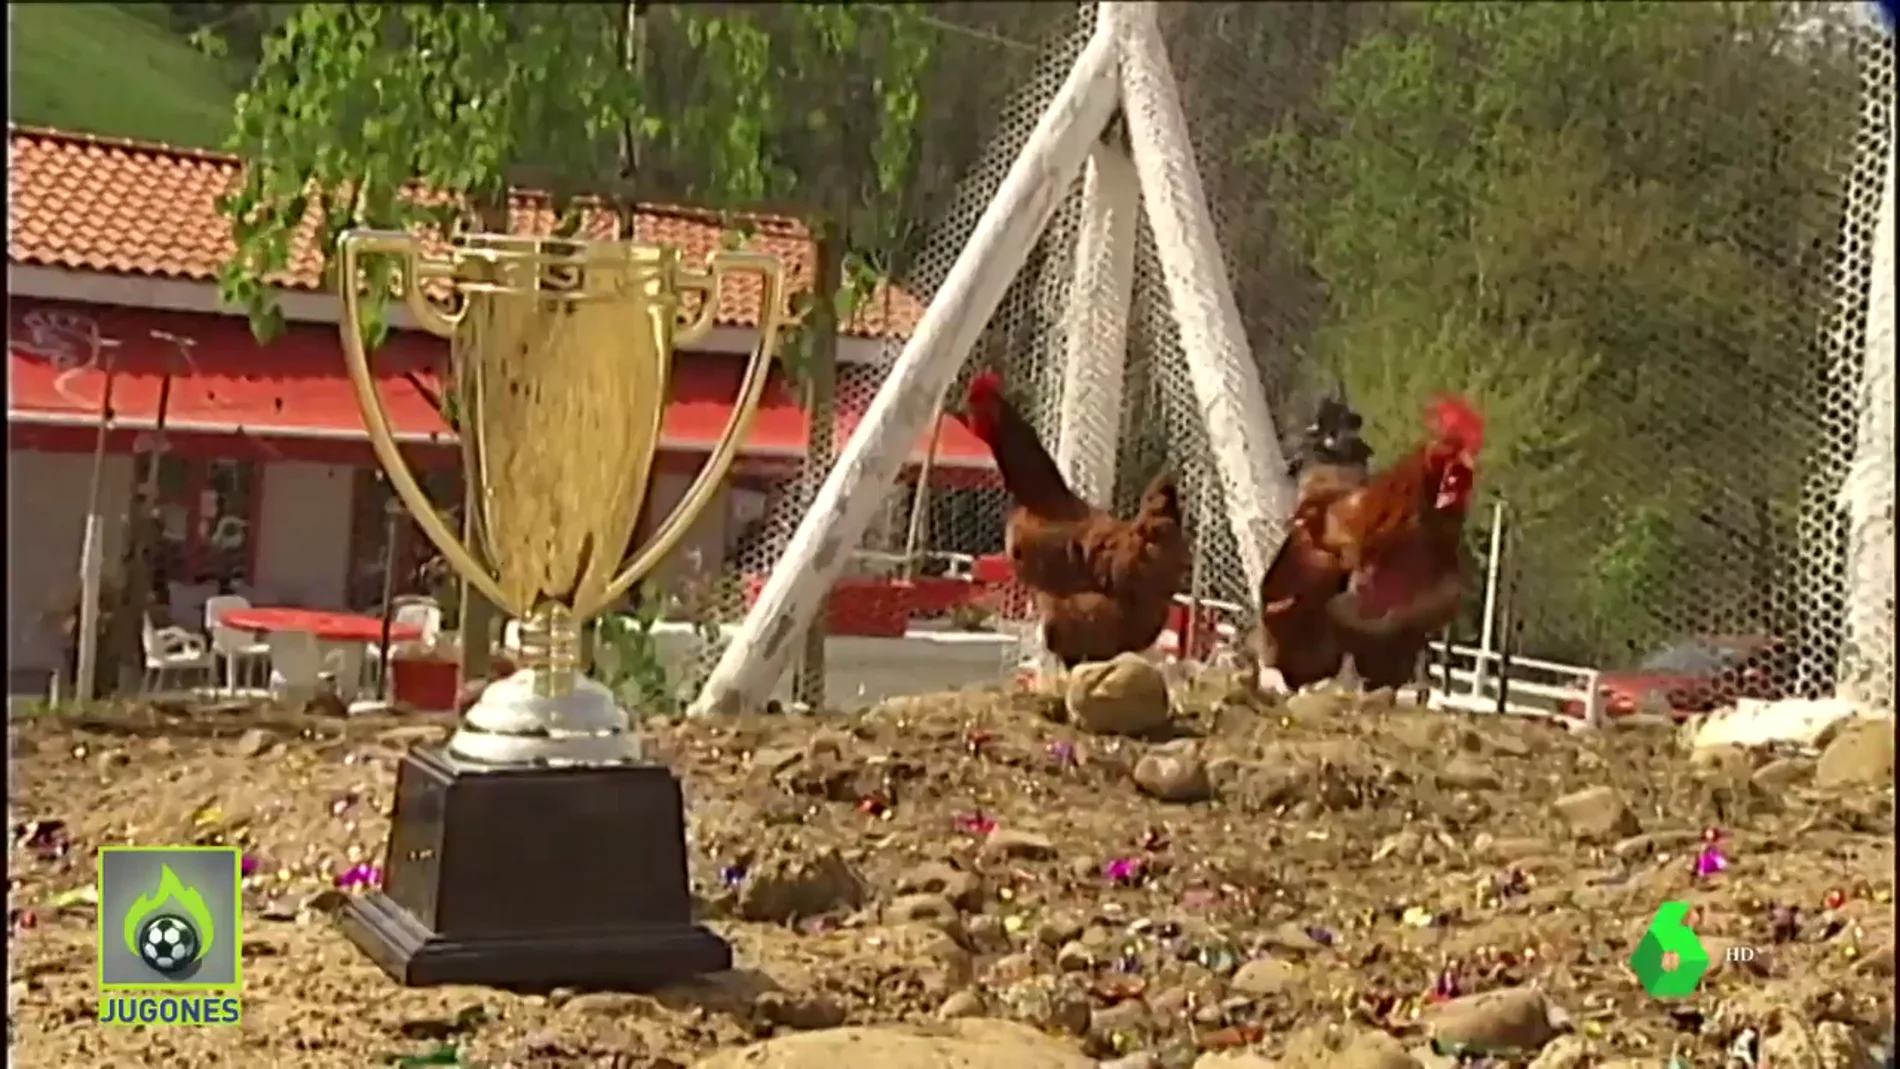 Granja Cabañuca, el lugar donde las gallinas predicen el resultado de la final de Copa entre la Real y el Athletic